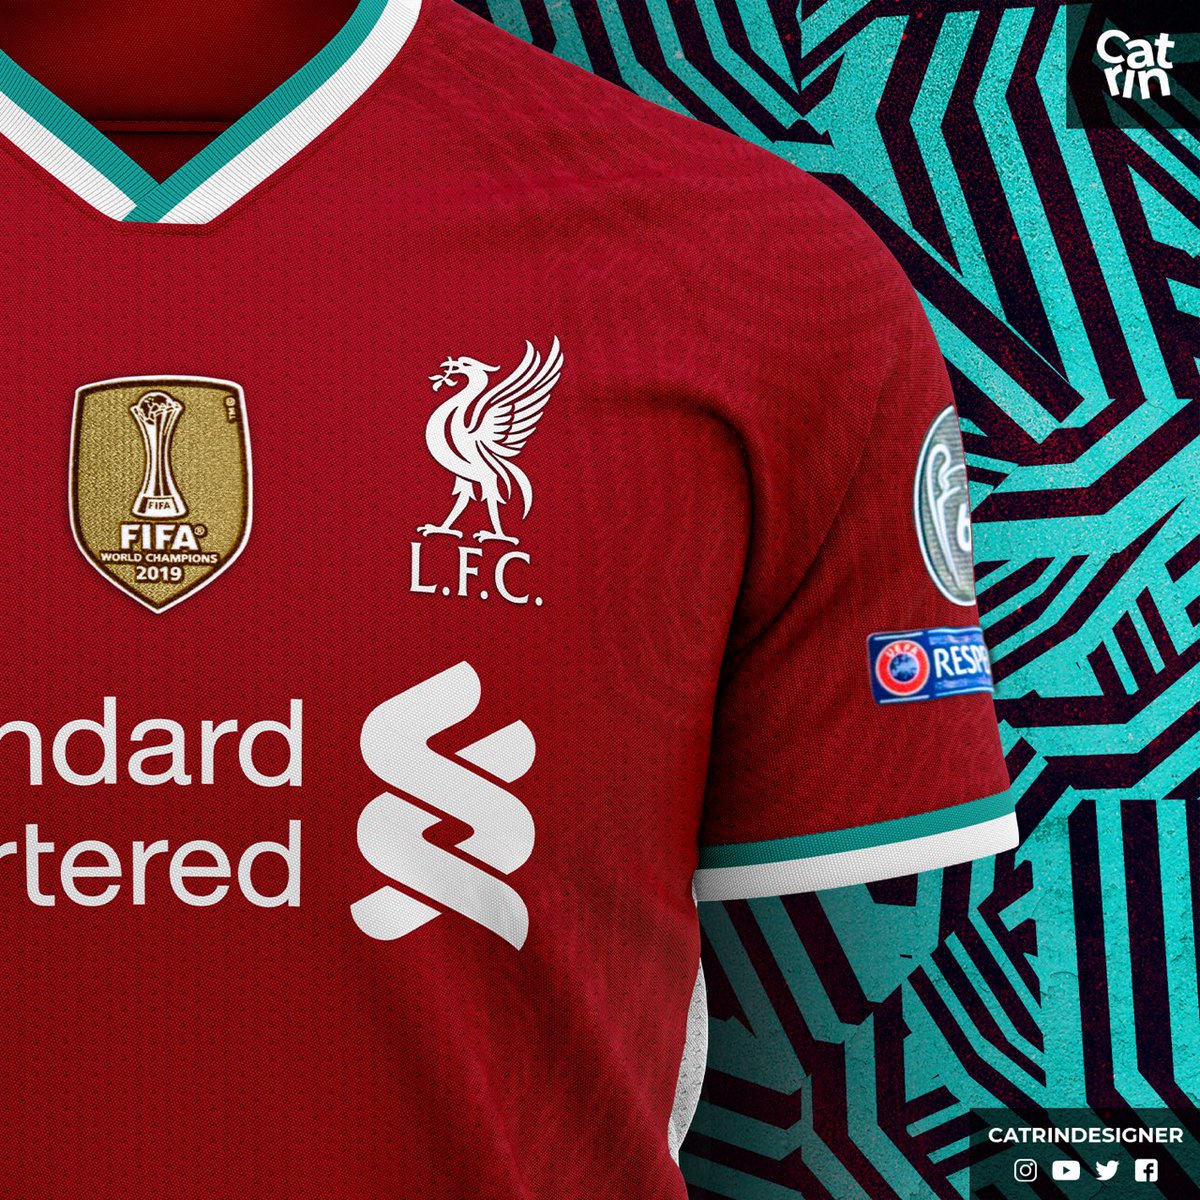 Liverpool FC on Twitter: "El acuerdo entre Liverpool y Nike comenzará a partir del de Agosto, cuya fecha será cuando se oficialmente la nueva camiseta del https://t.co/E35mmBpLfp" / Twitter